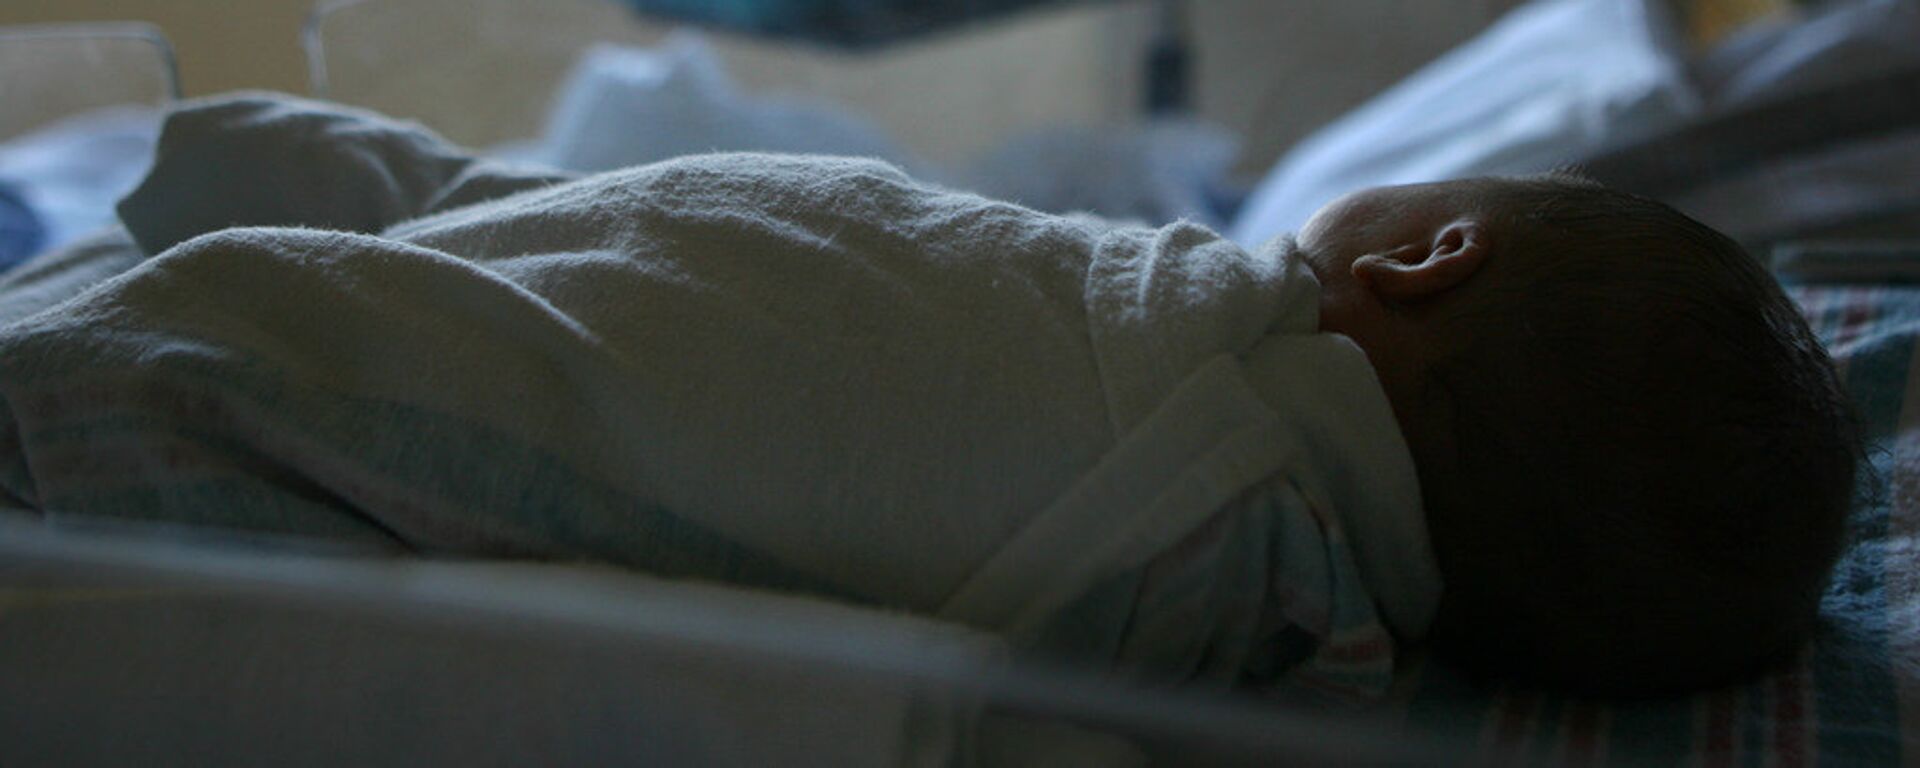 Новорожденный ребенок лежит в больнице - Sputnik Грузия, 1920, 08.07.2021